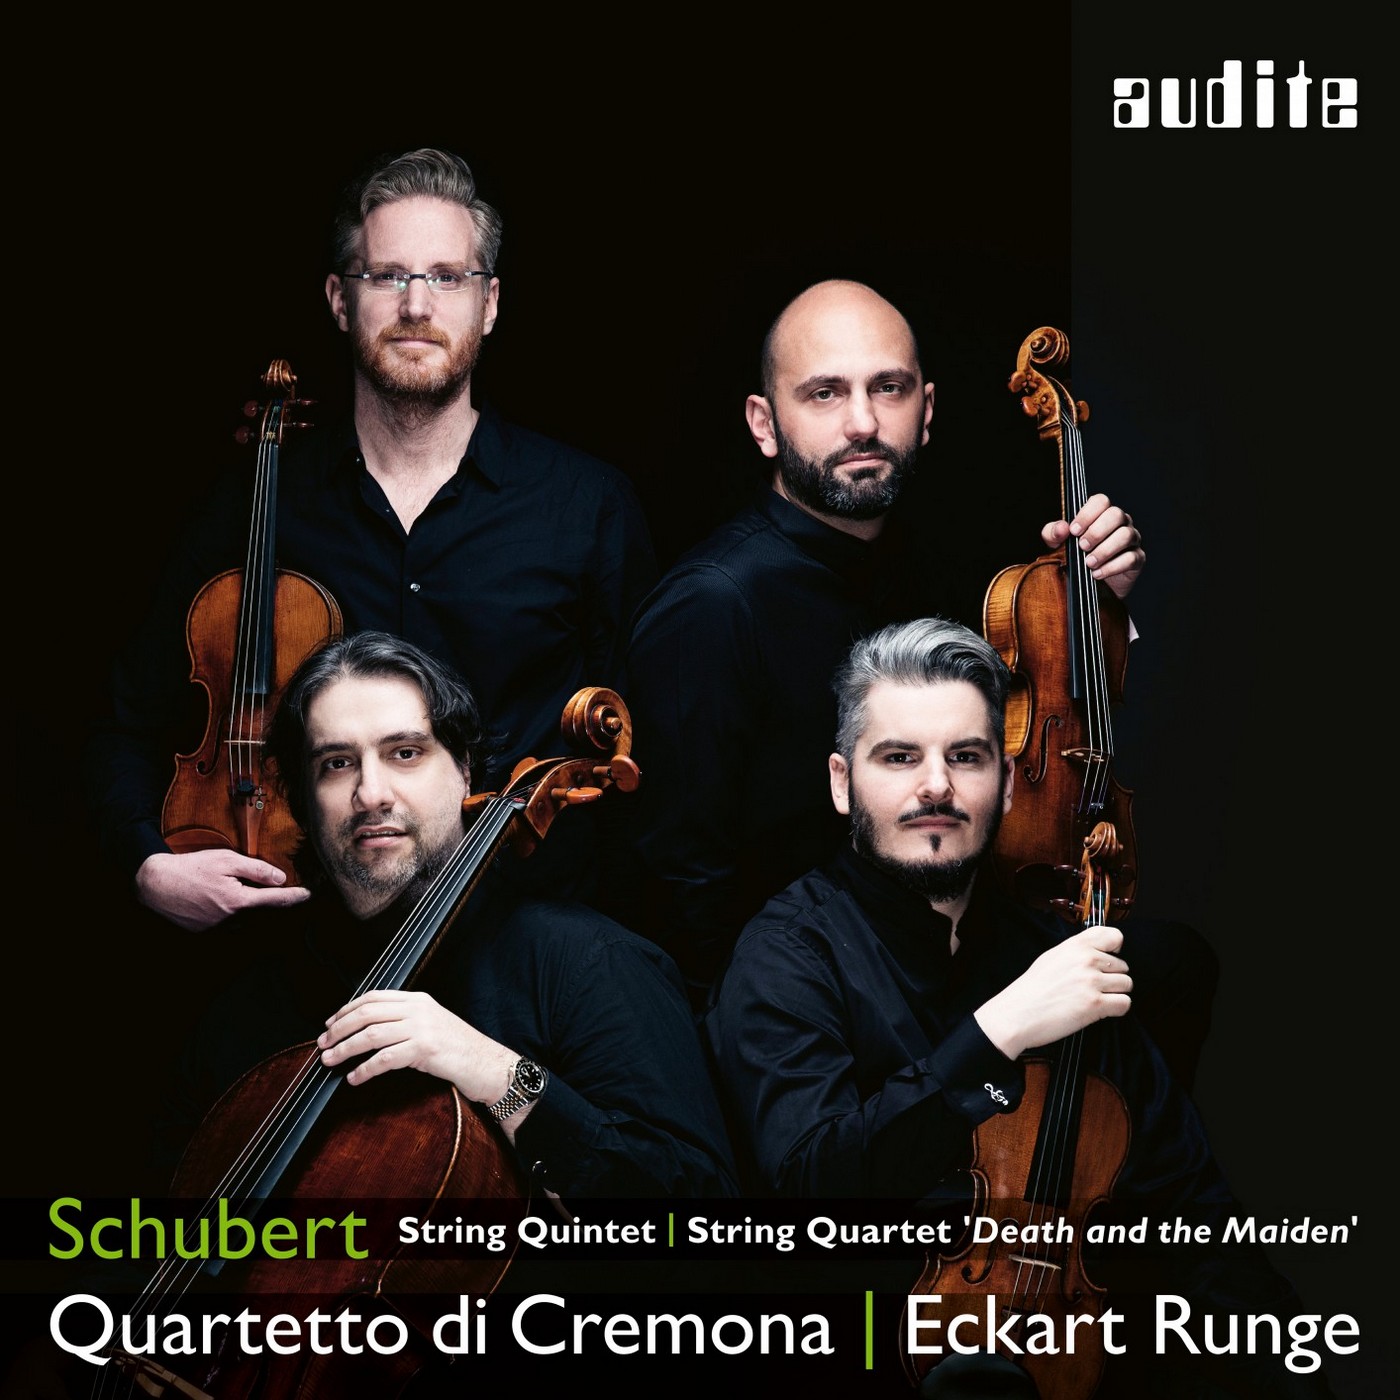 Quartetto di Cremona & Eckart Runge – Schubert: String Quintet & String Quartet ‘Death and the Maiden’ (2019) [FLAC 24bit/96kHz]